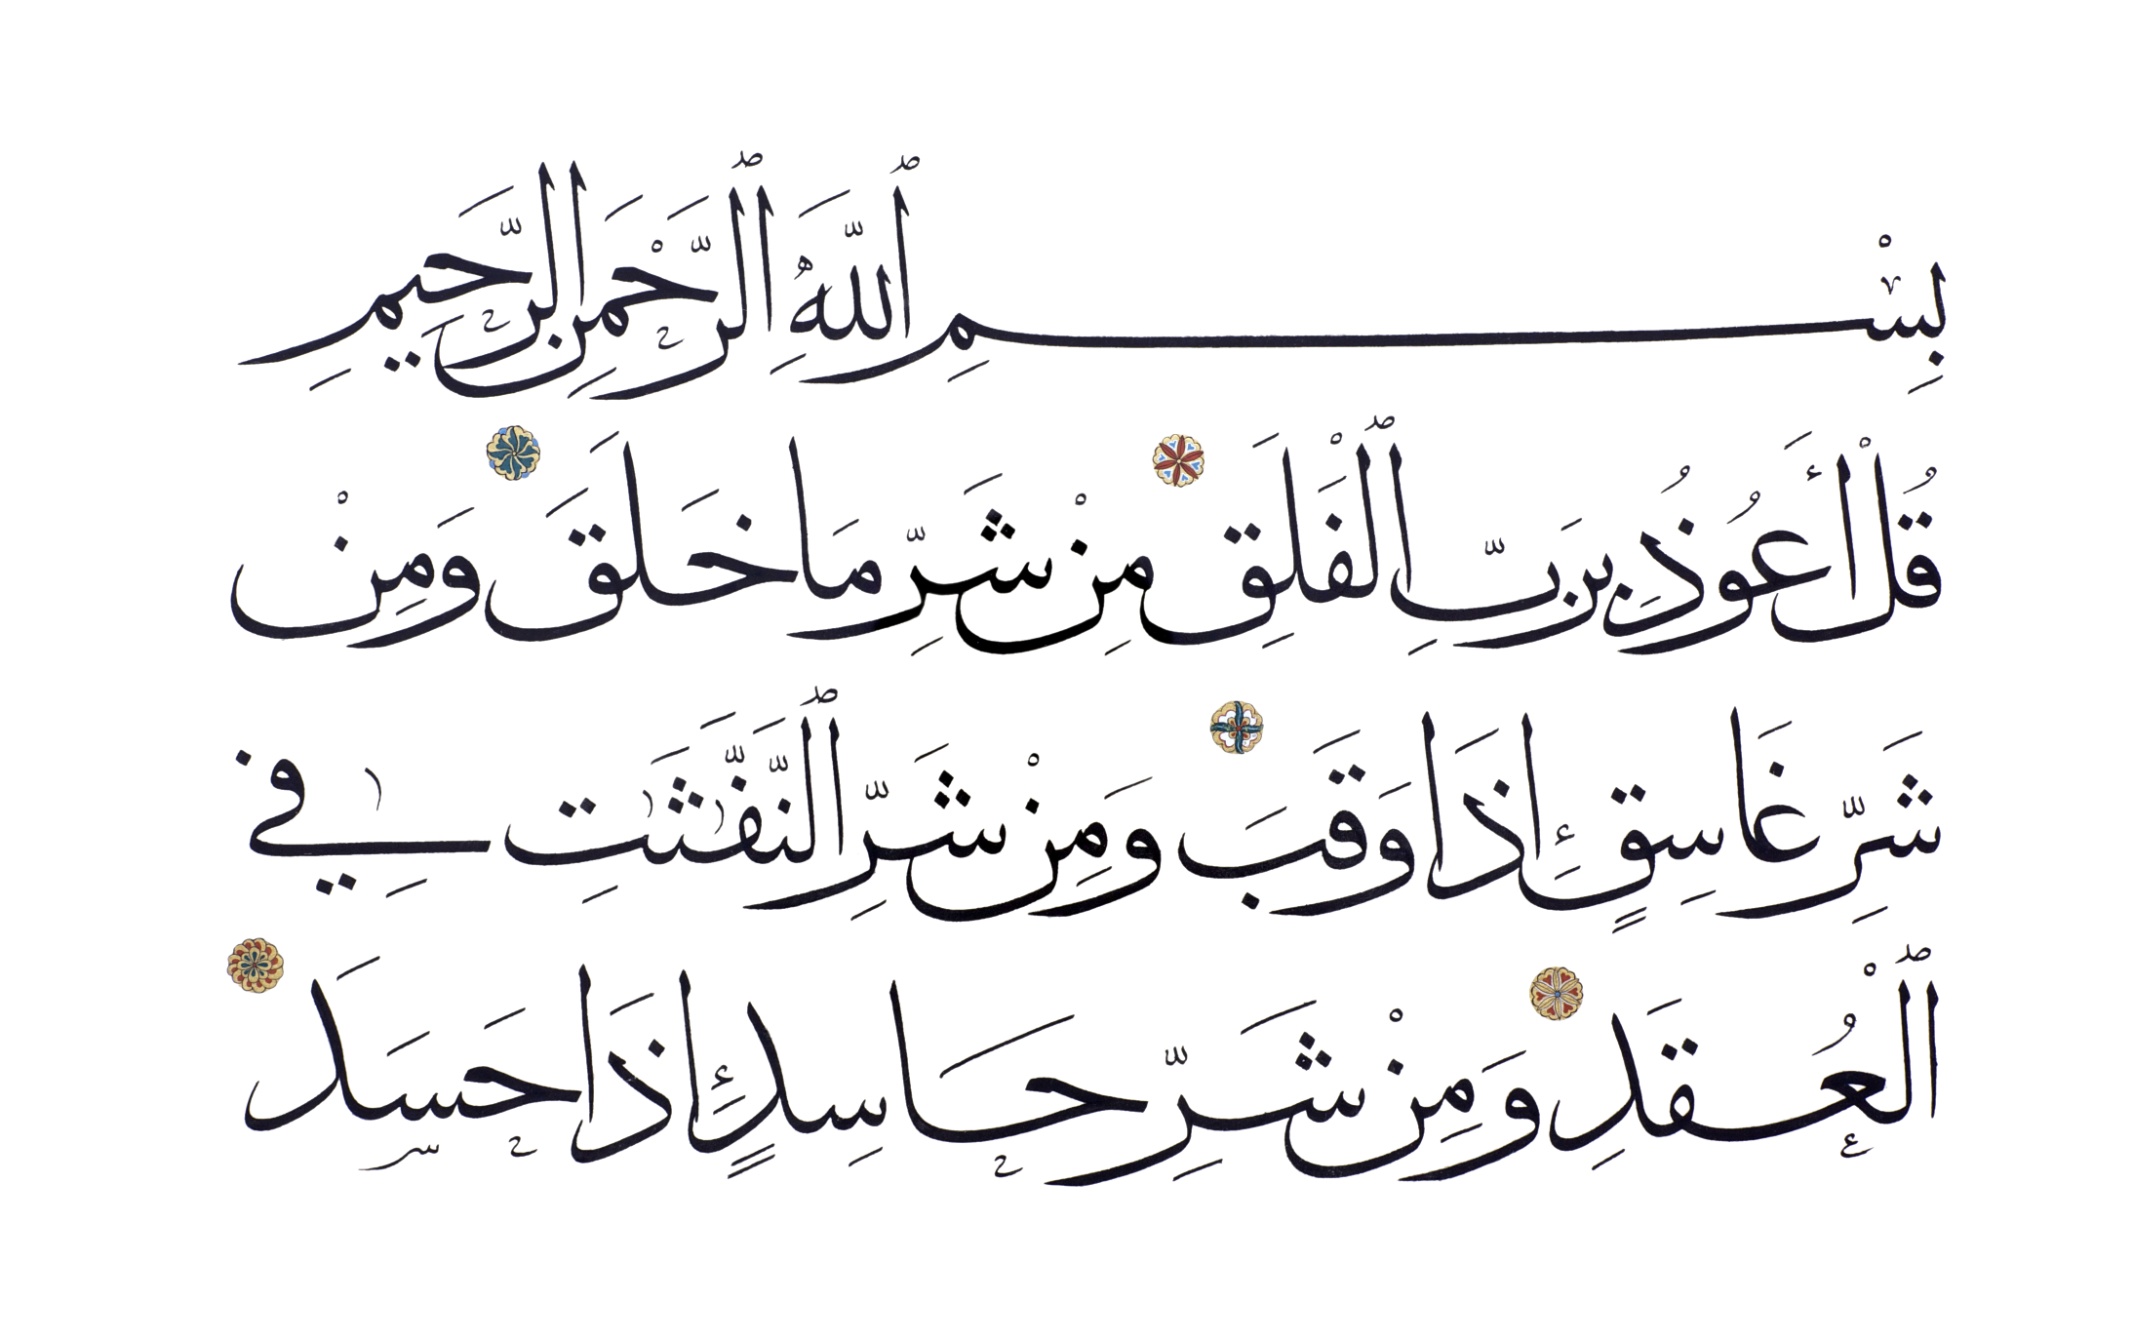 Аль матаха. Сура Аль Фатиха каллиграфия. Сура Аль Ихлас каллиграфия. Сура Аль Фатиха на арабском. Суры на арабском.